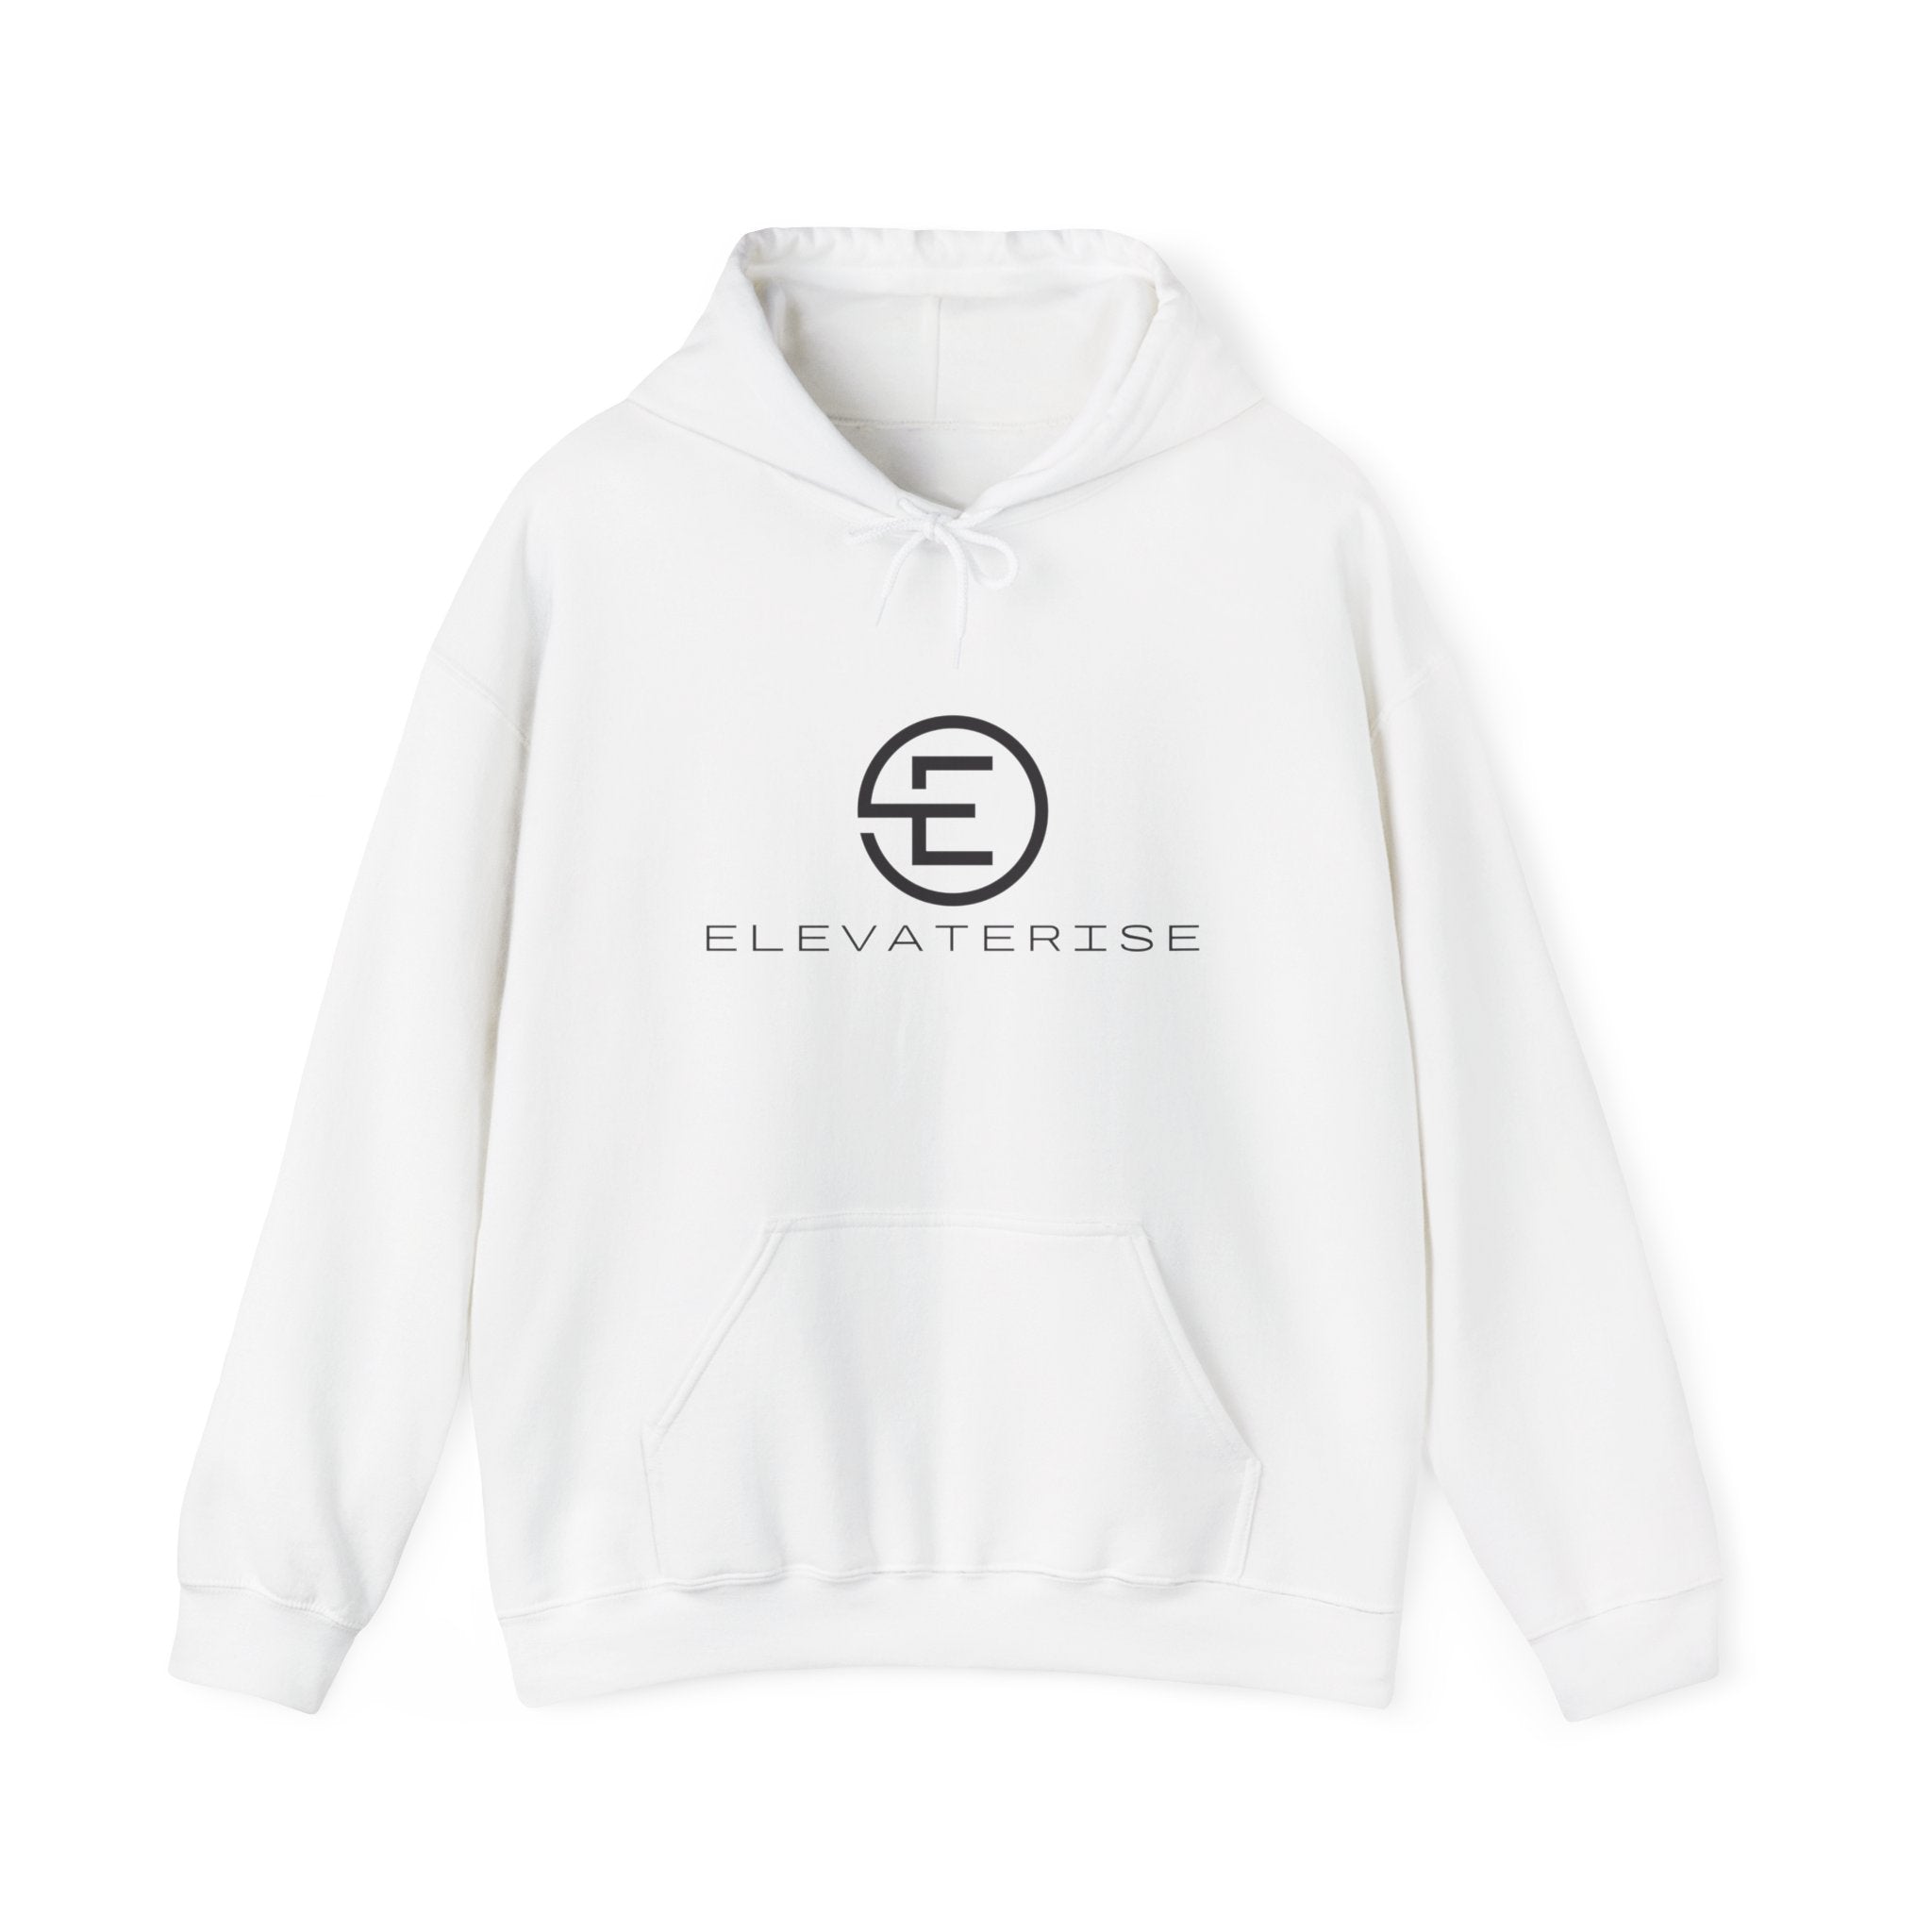 Women's ElevateRise Hooded Sweatshirt